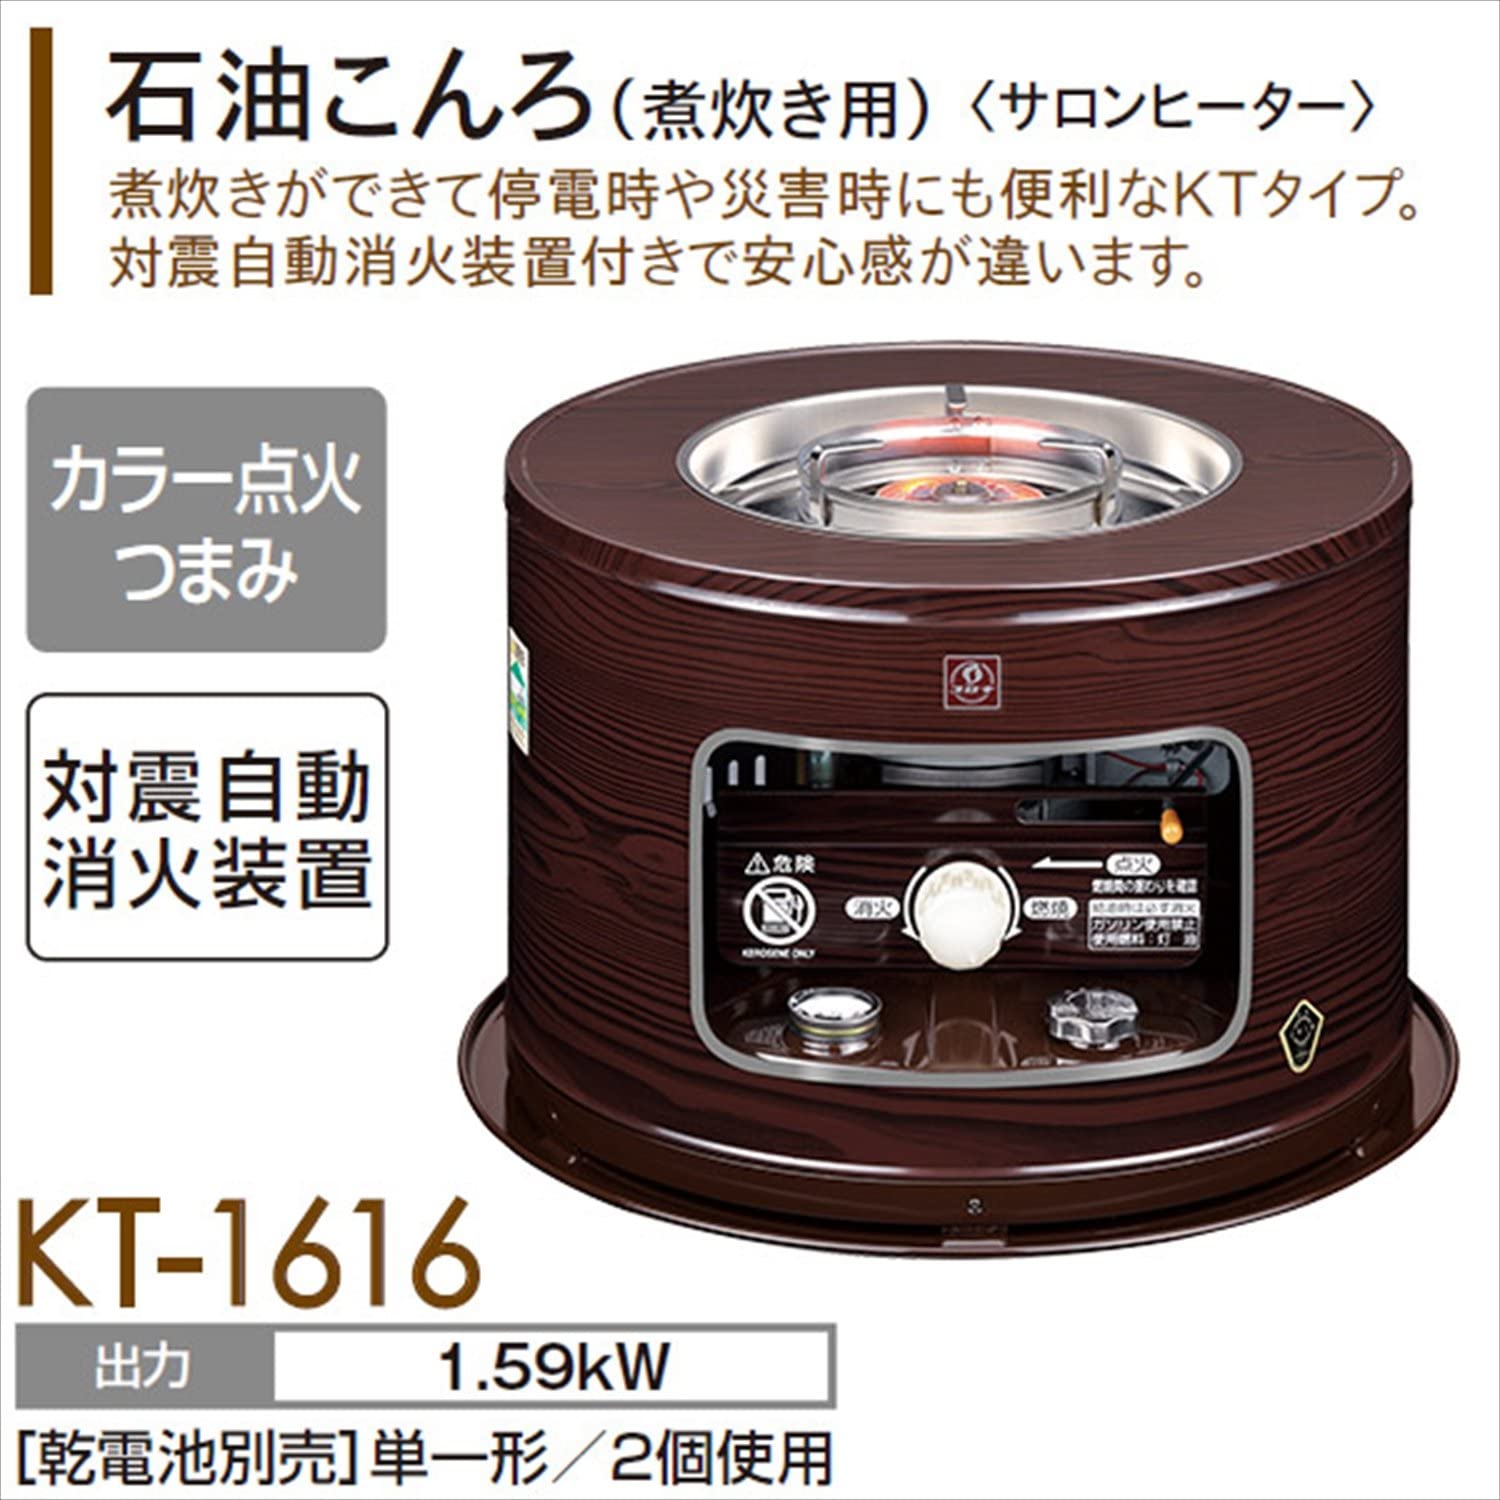 日本煤油暖爐】 新品海外代購現貨即出2021新款CORONA KT-1616〈燉煮型